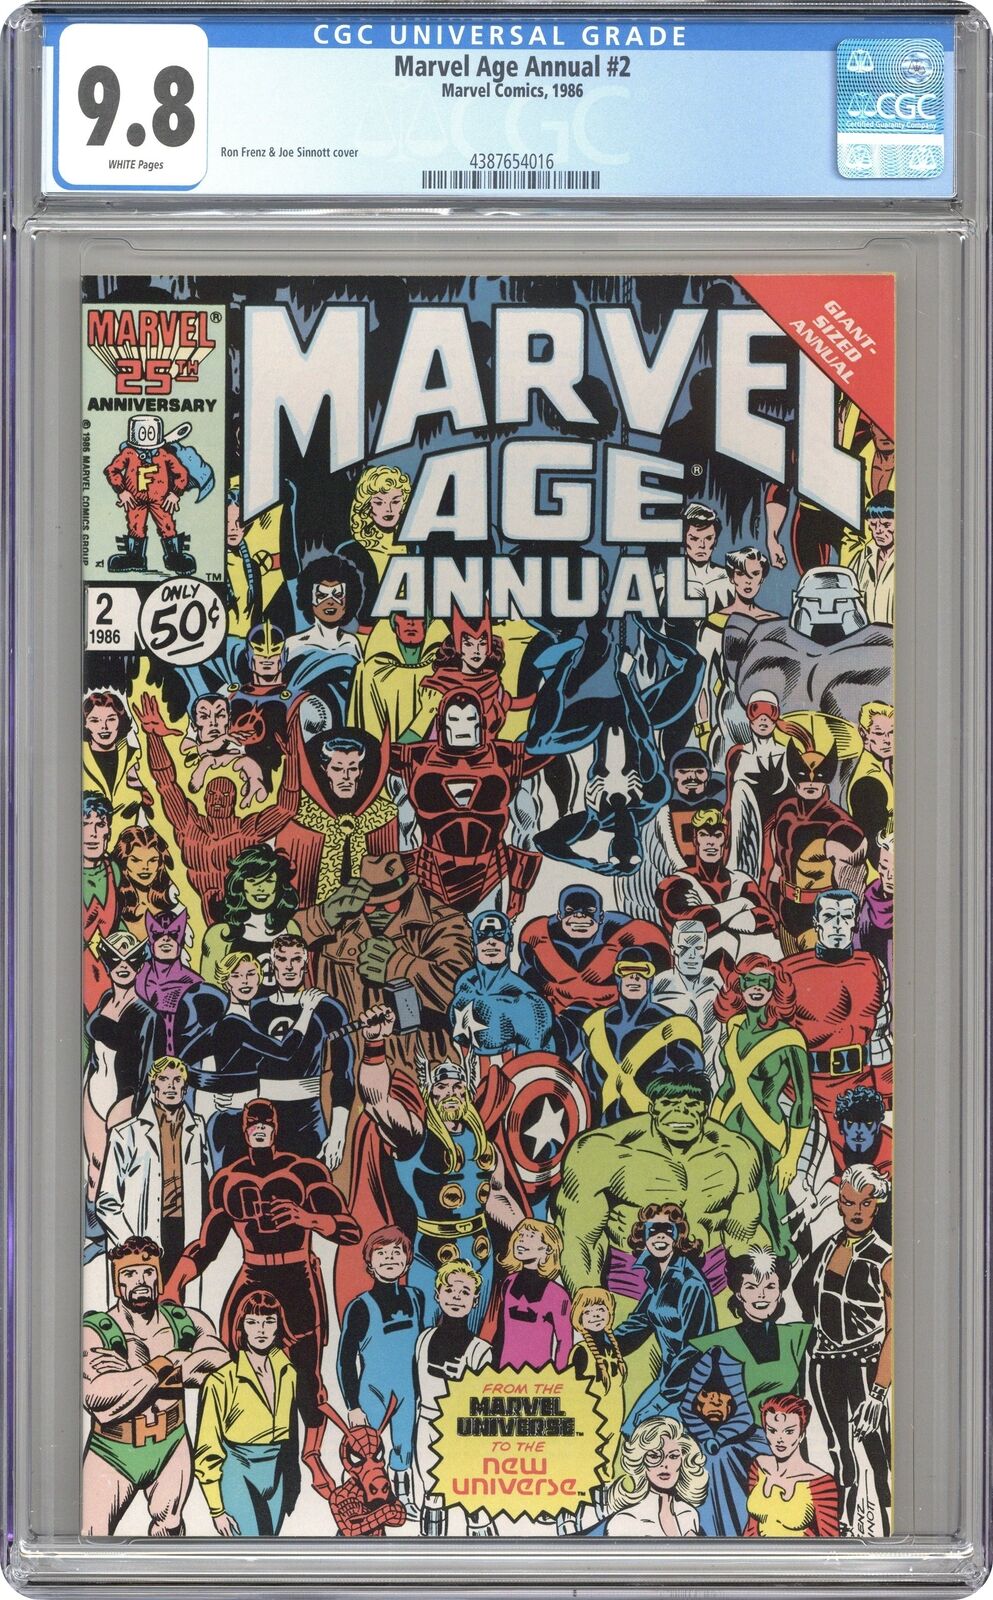 Marvel Age Annual #2 CGC 9.8 1986 4387654016